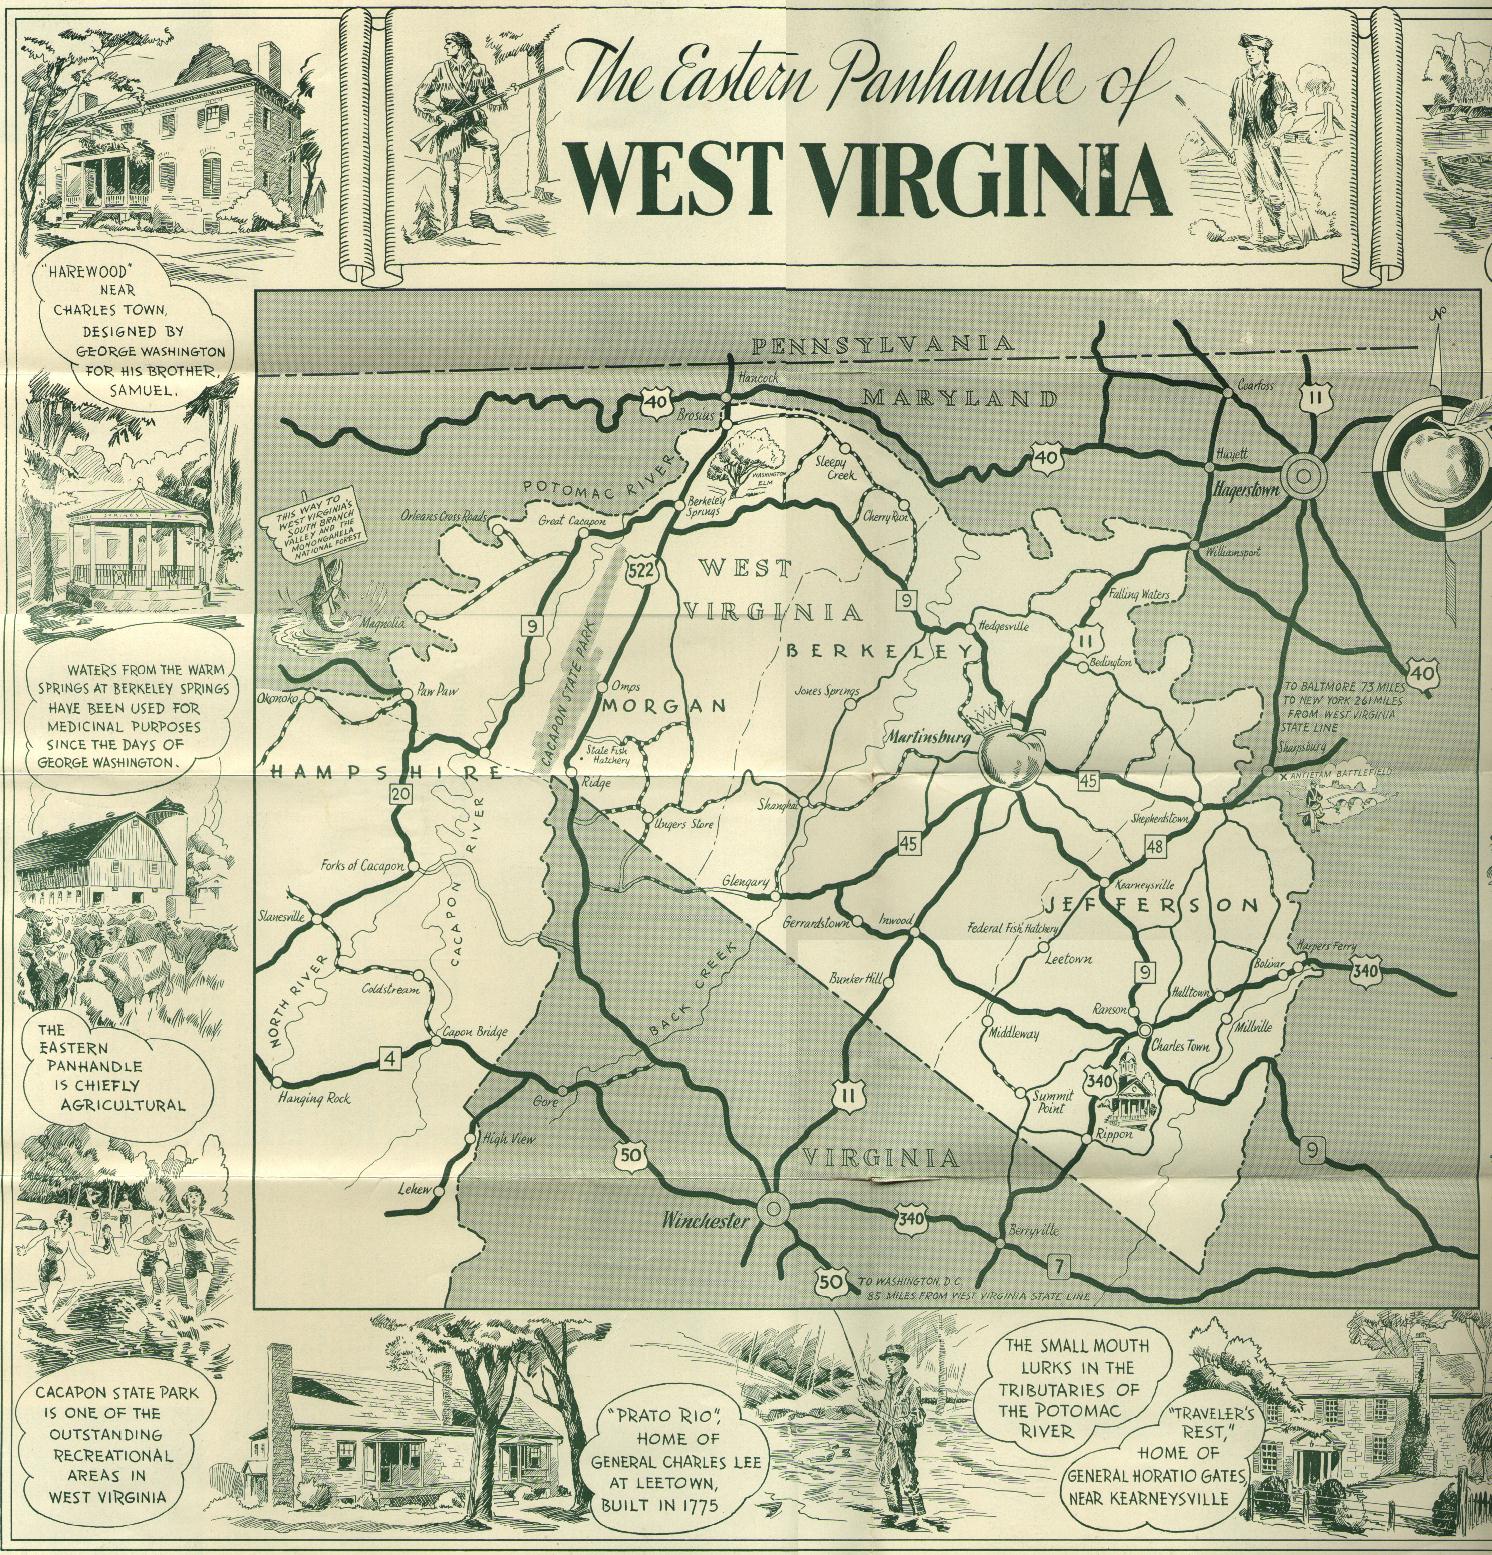 The Eastern Panhandle of West Virginia